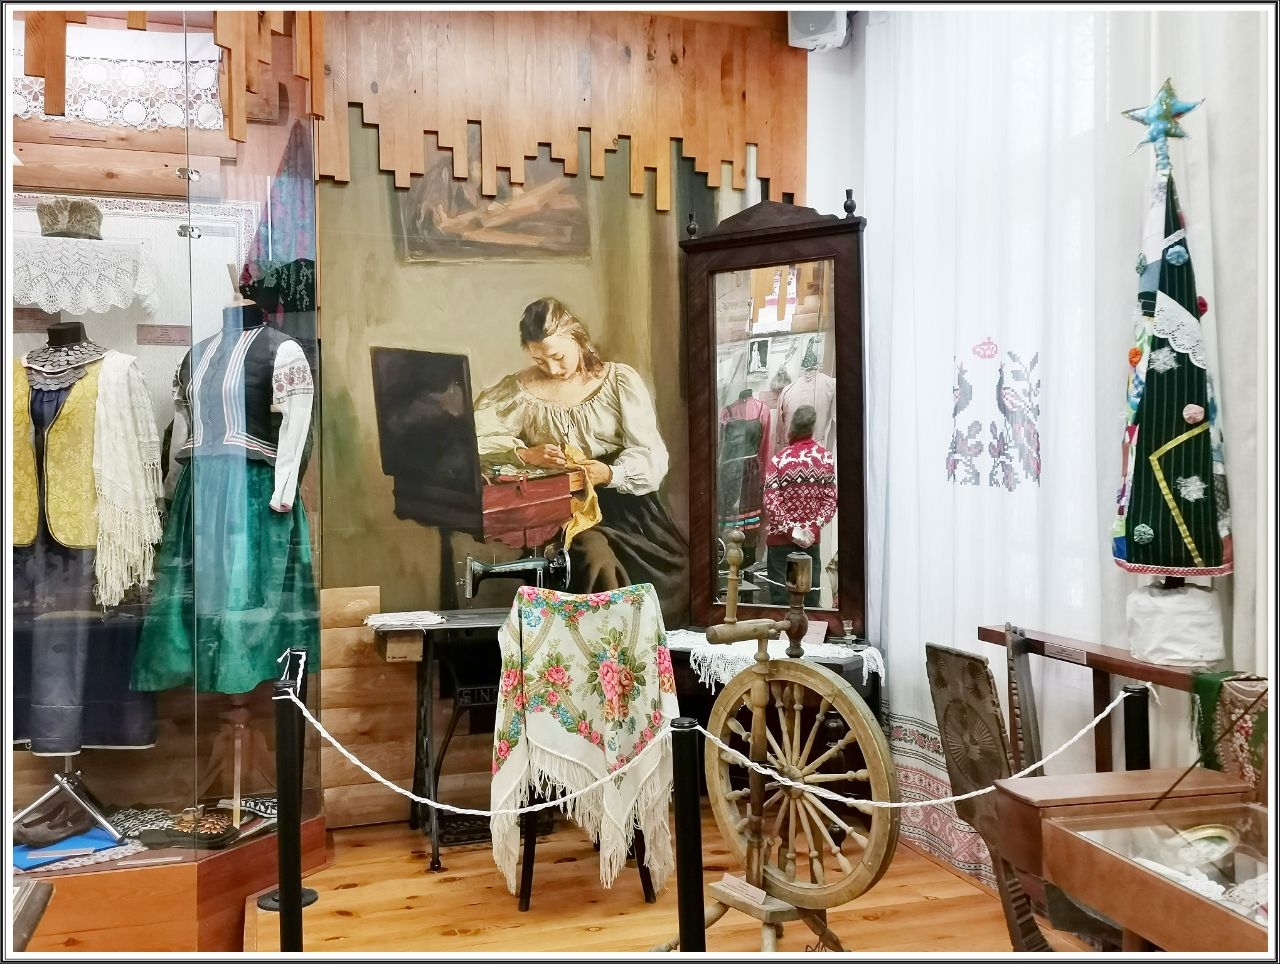 Прялки, швейная машинка и прочие женские инструменты :) Тобольск, Россия